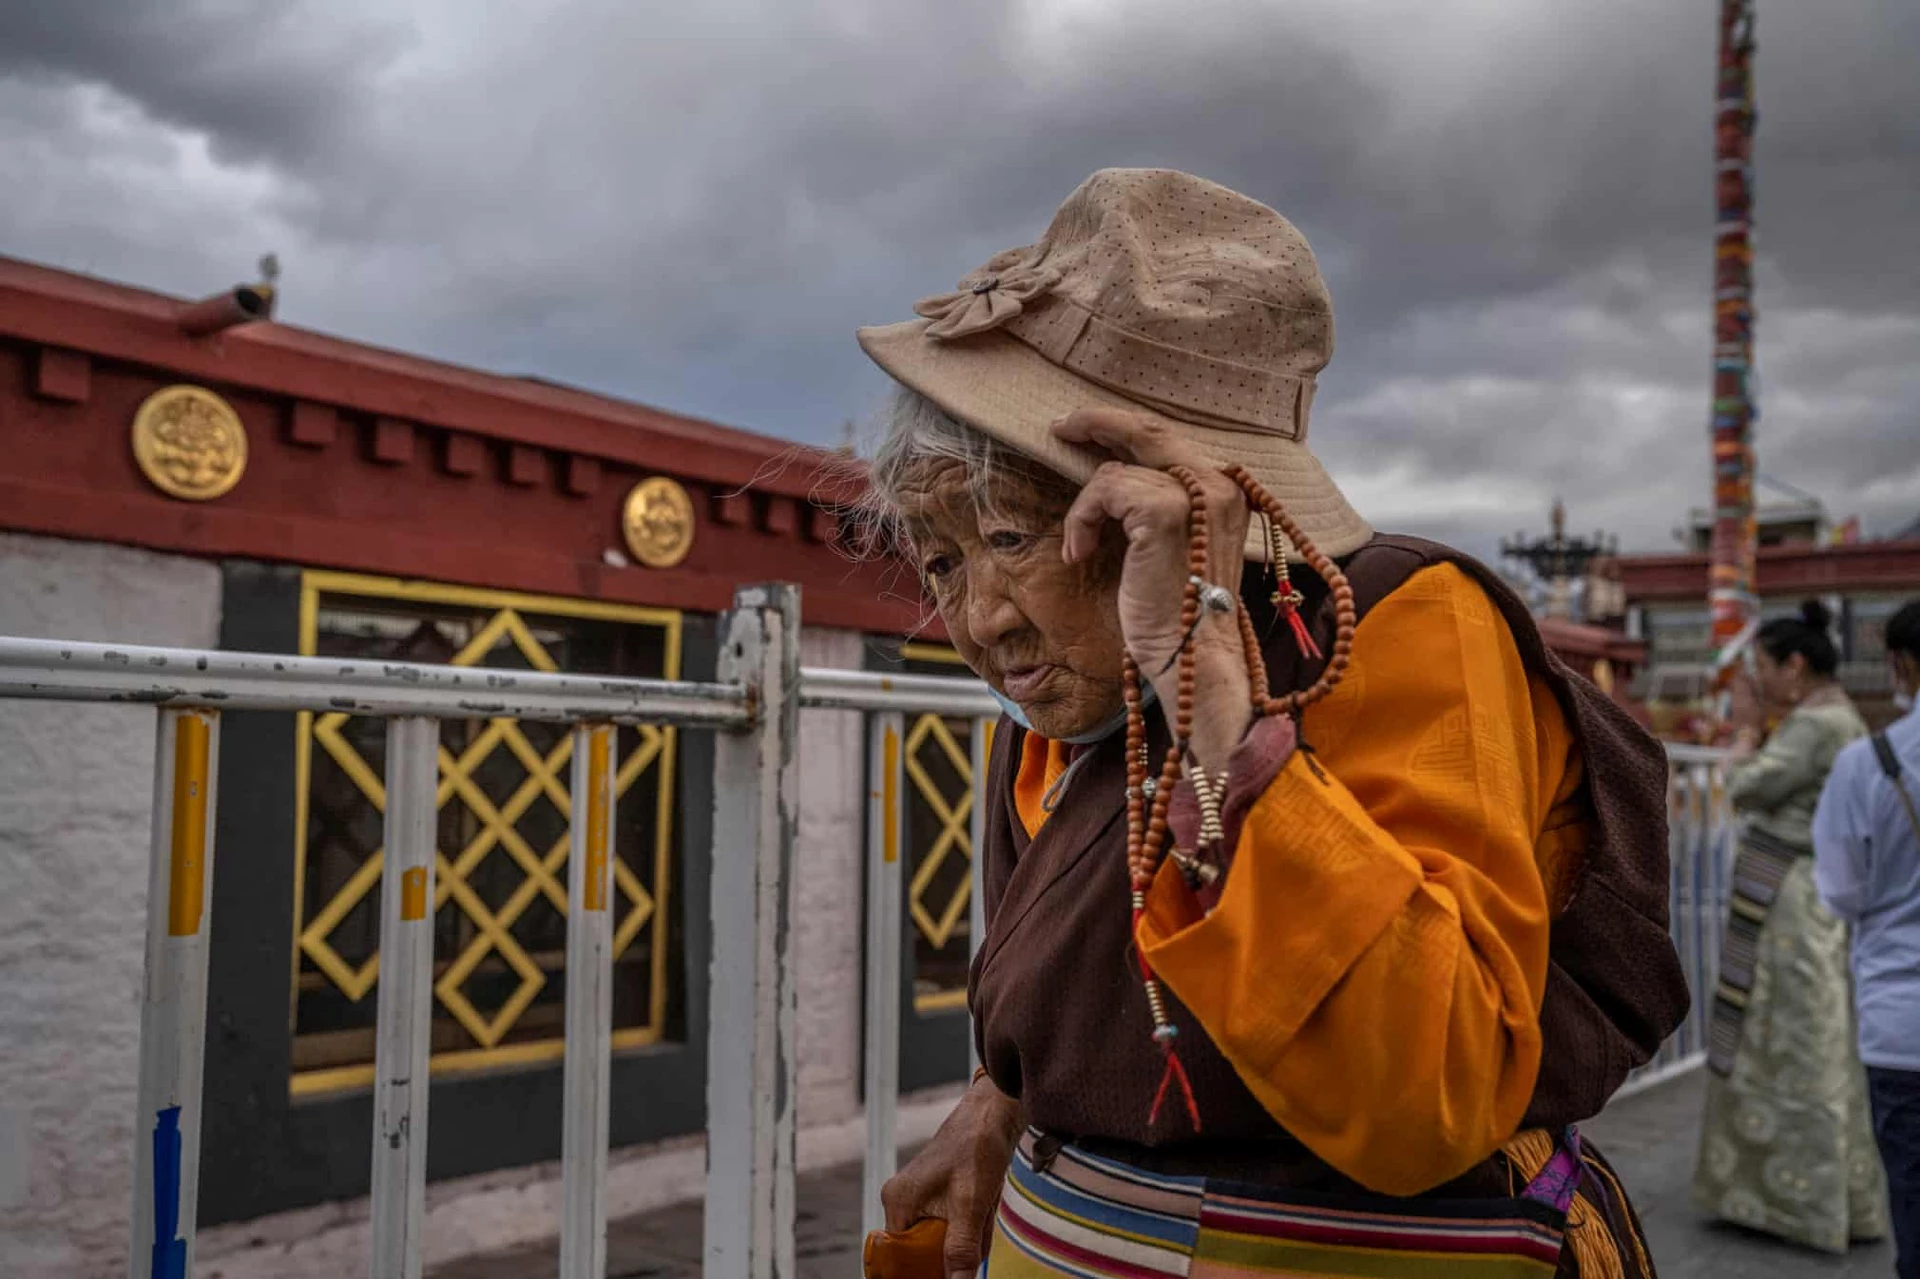 Một phụ nữ đến thăm chùa Đại Chiêu ở Lhasa. Đối với người Tây Tạng, đây là ngôi chùa linh thiêng nhất. Chùa được xây dựng vào khoảng thế kỷ thứ 7. Tới năm 1978, chùa được trùng tu để đón khách. 2 năm sau, chùa chính thức mở cửa đón du khách và những người hành hương.